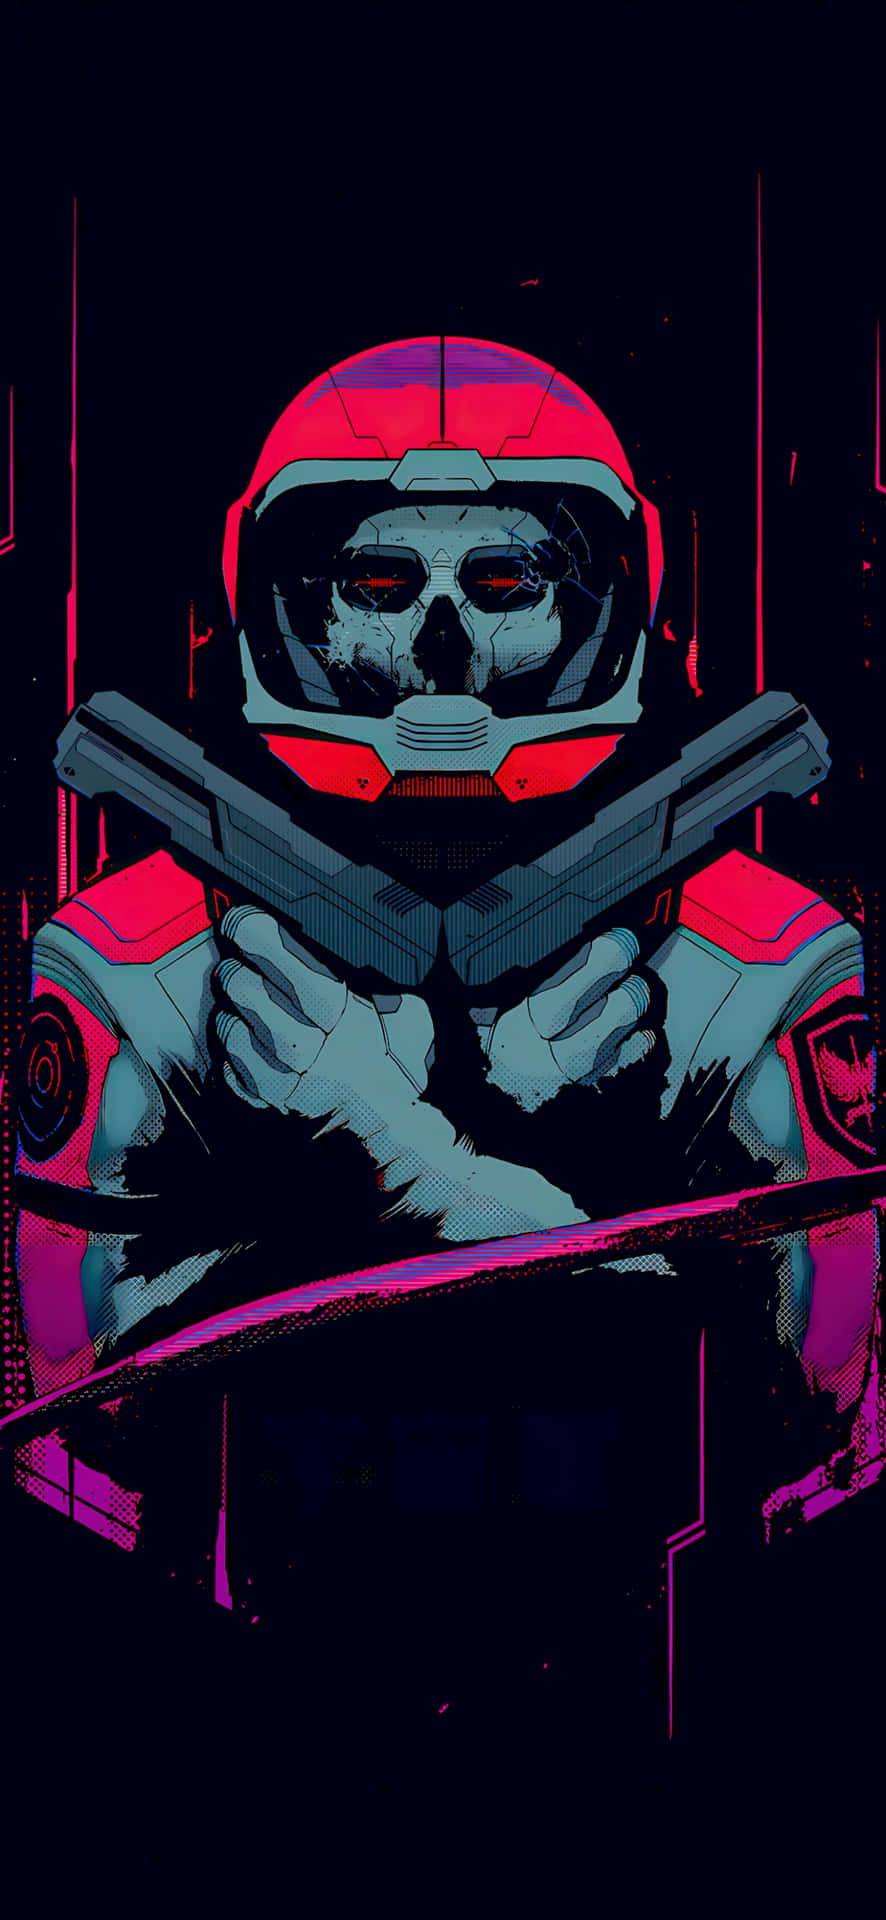 Cyberpunk Astronaut Artwork Wallpaper